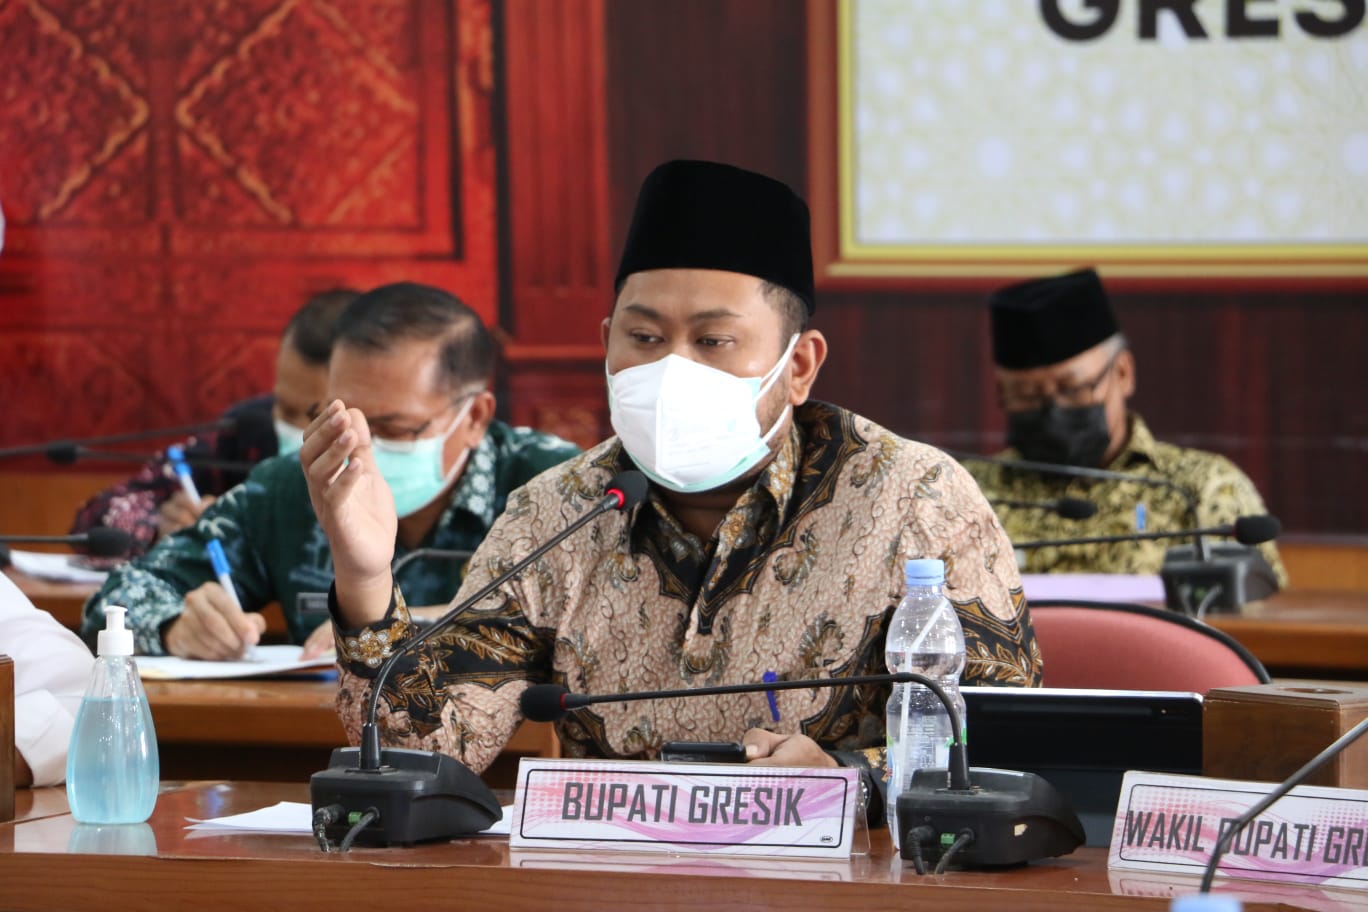 Bupati Gresik Fandi Akhmad Yani saat memimpin rapat secara daring di kantor Bupati, Kamis (15/7/2021).